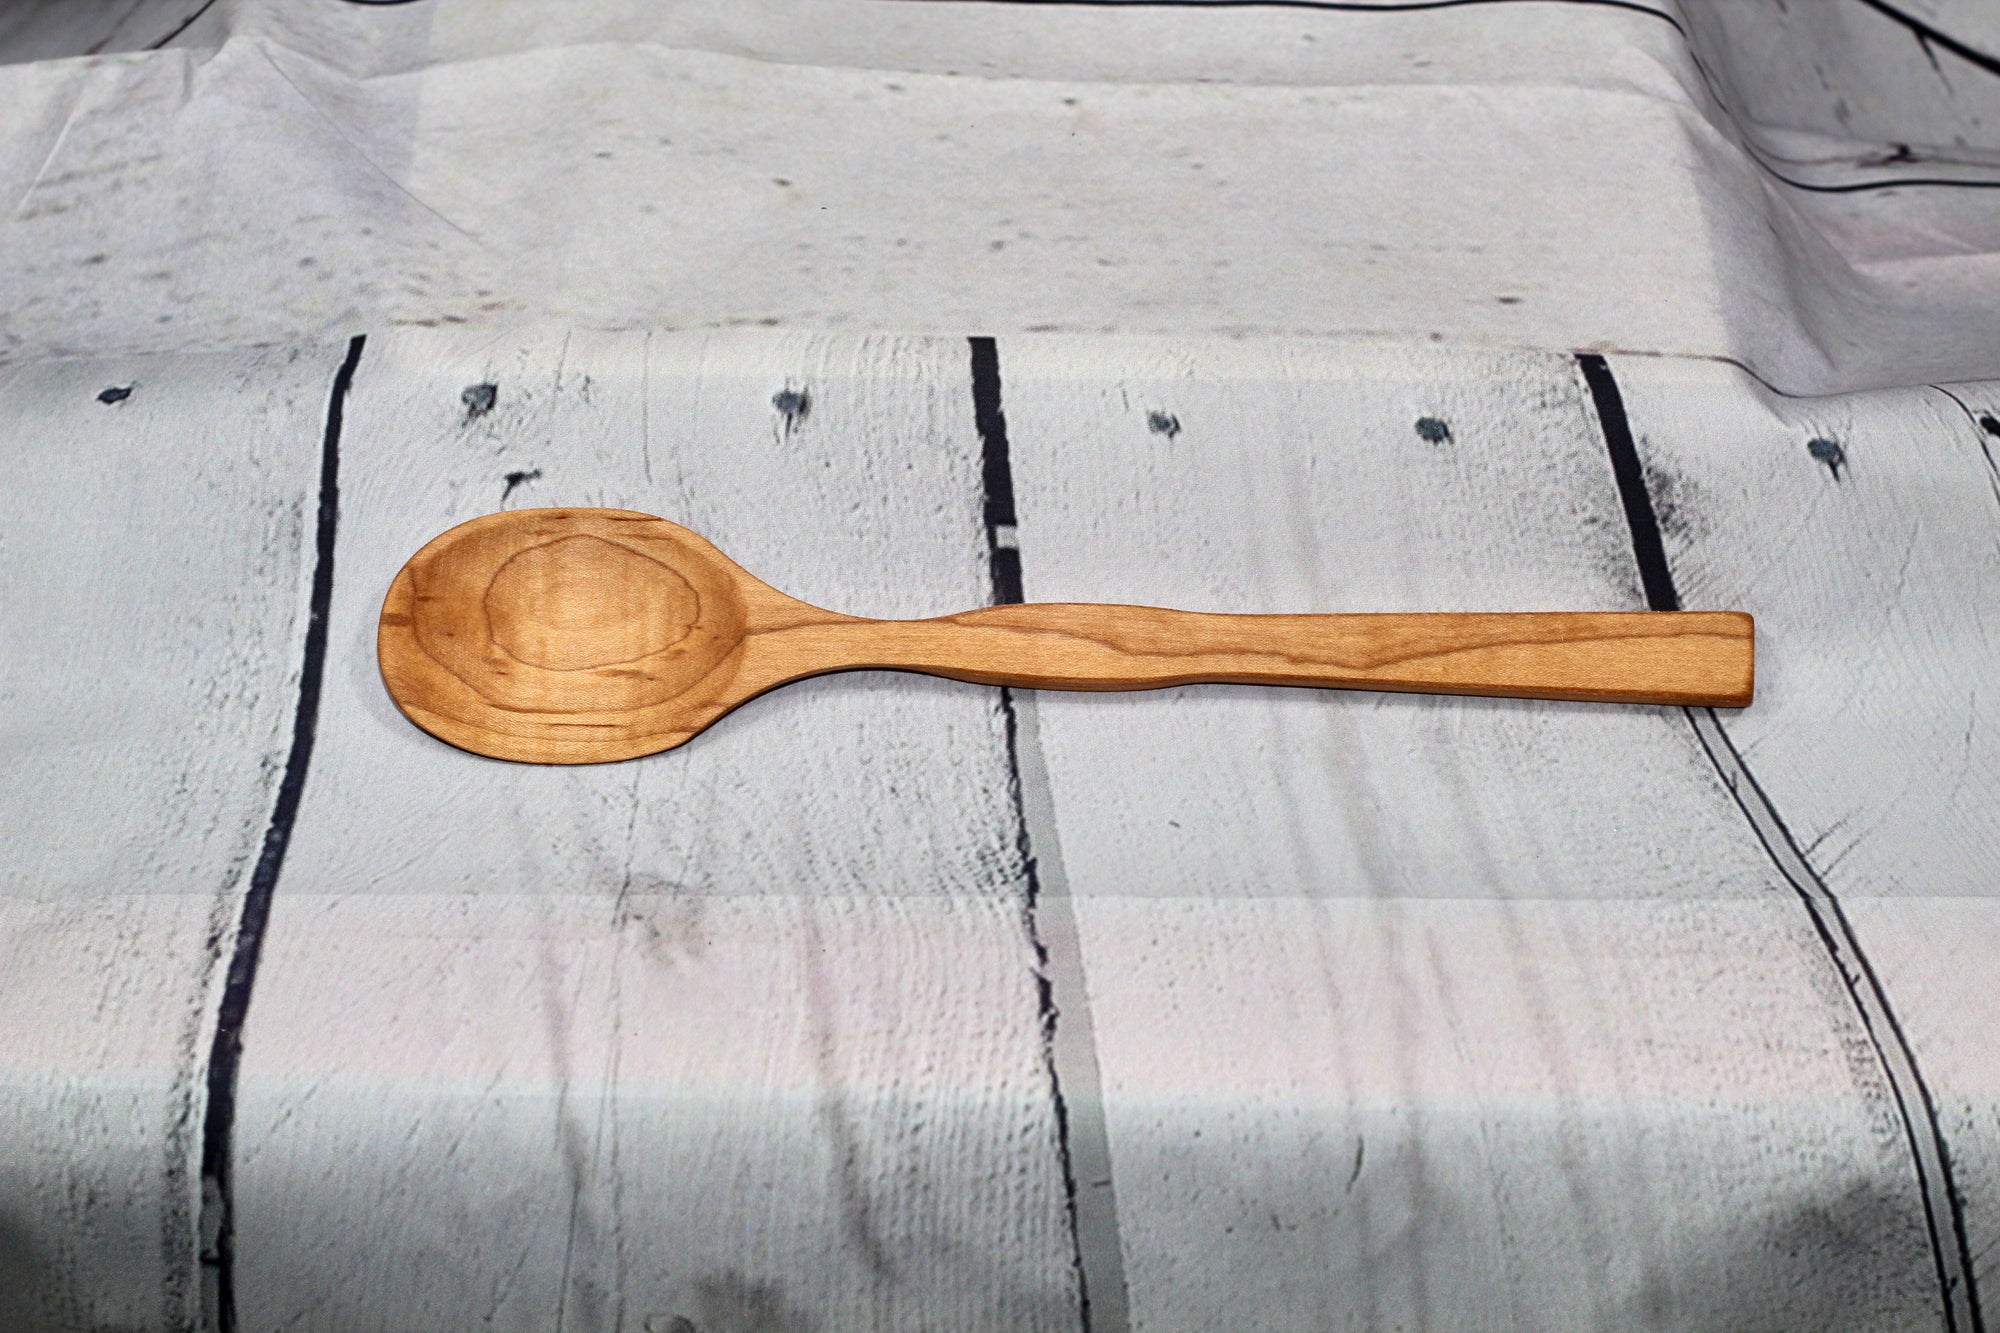 Spoon (maple)